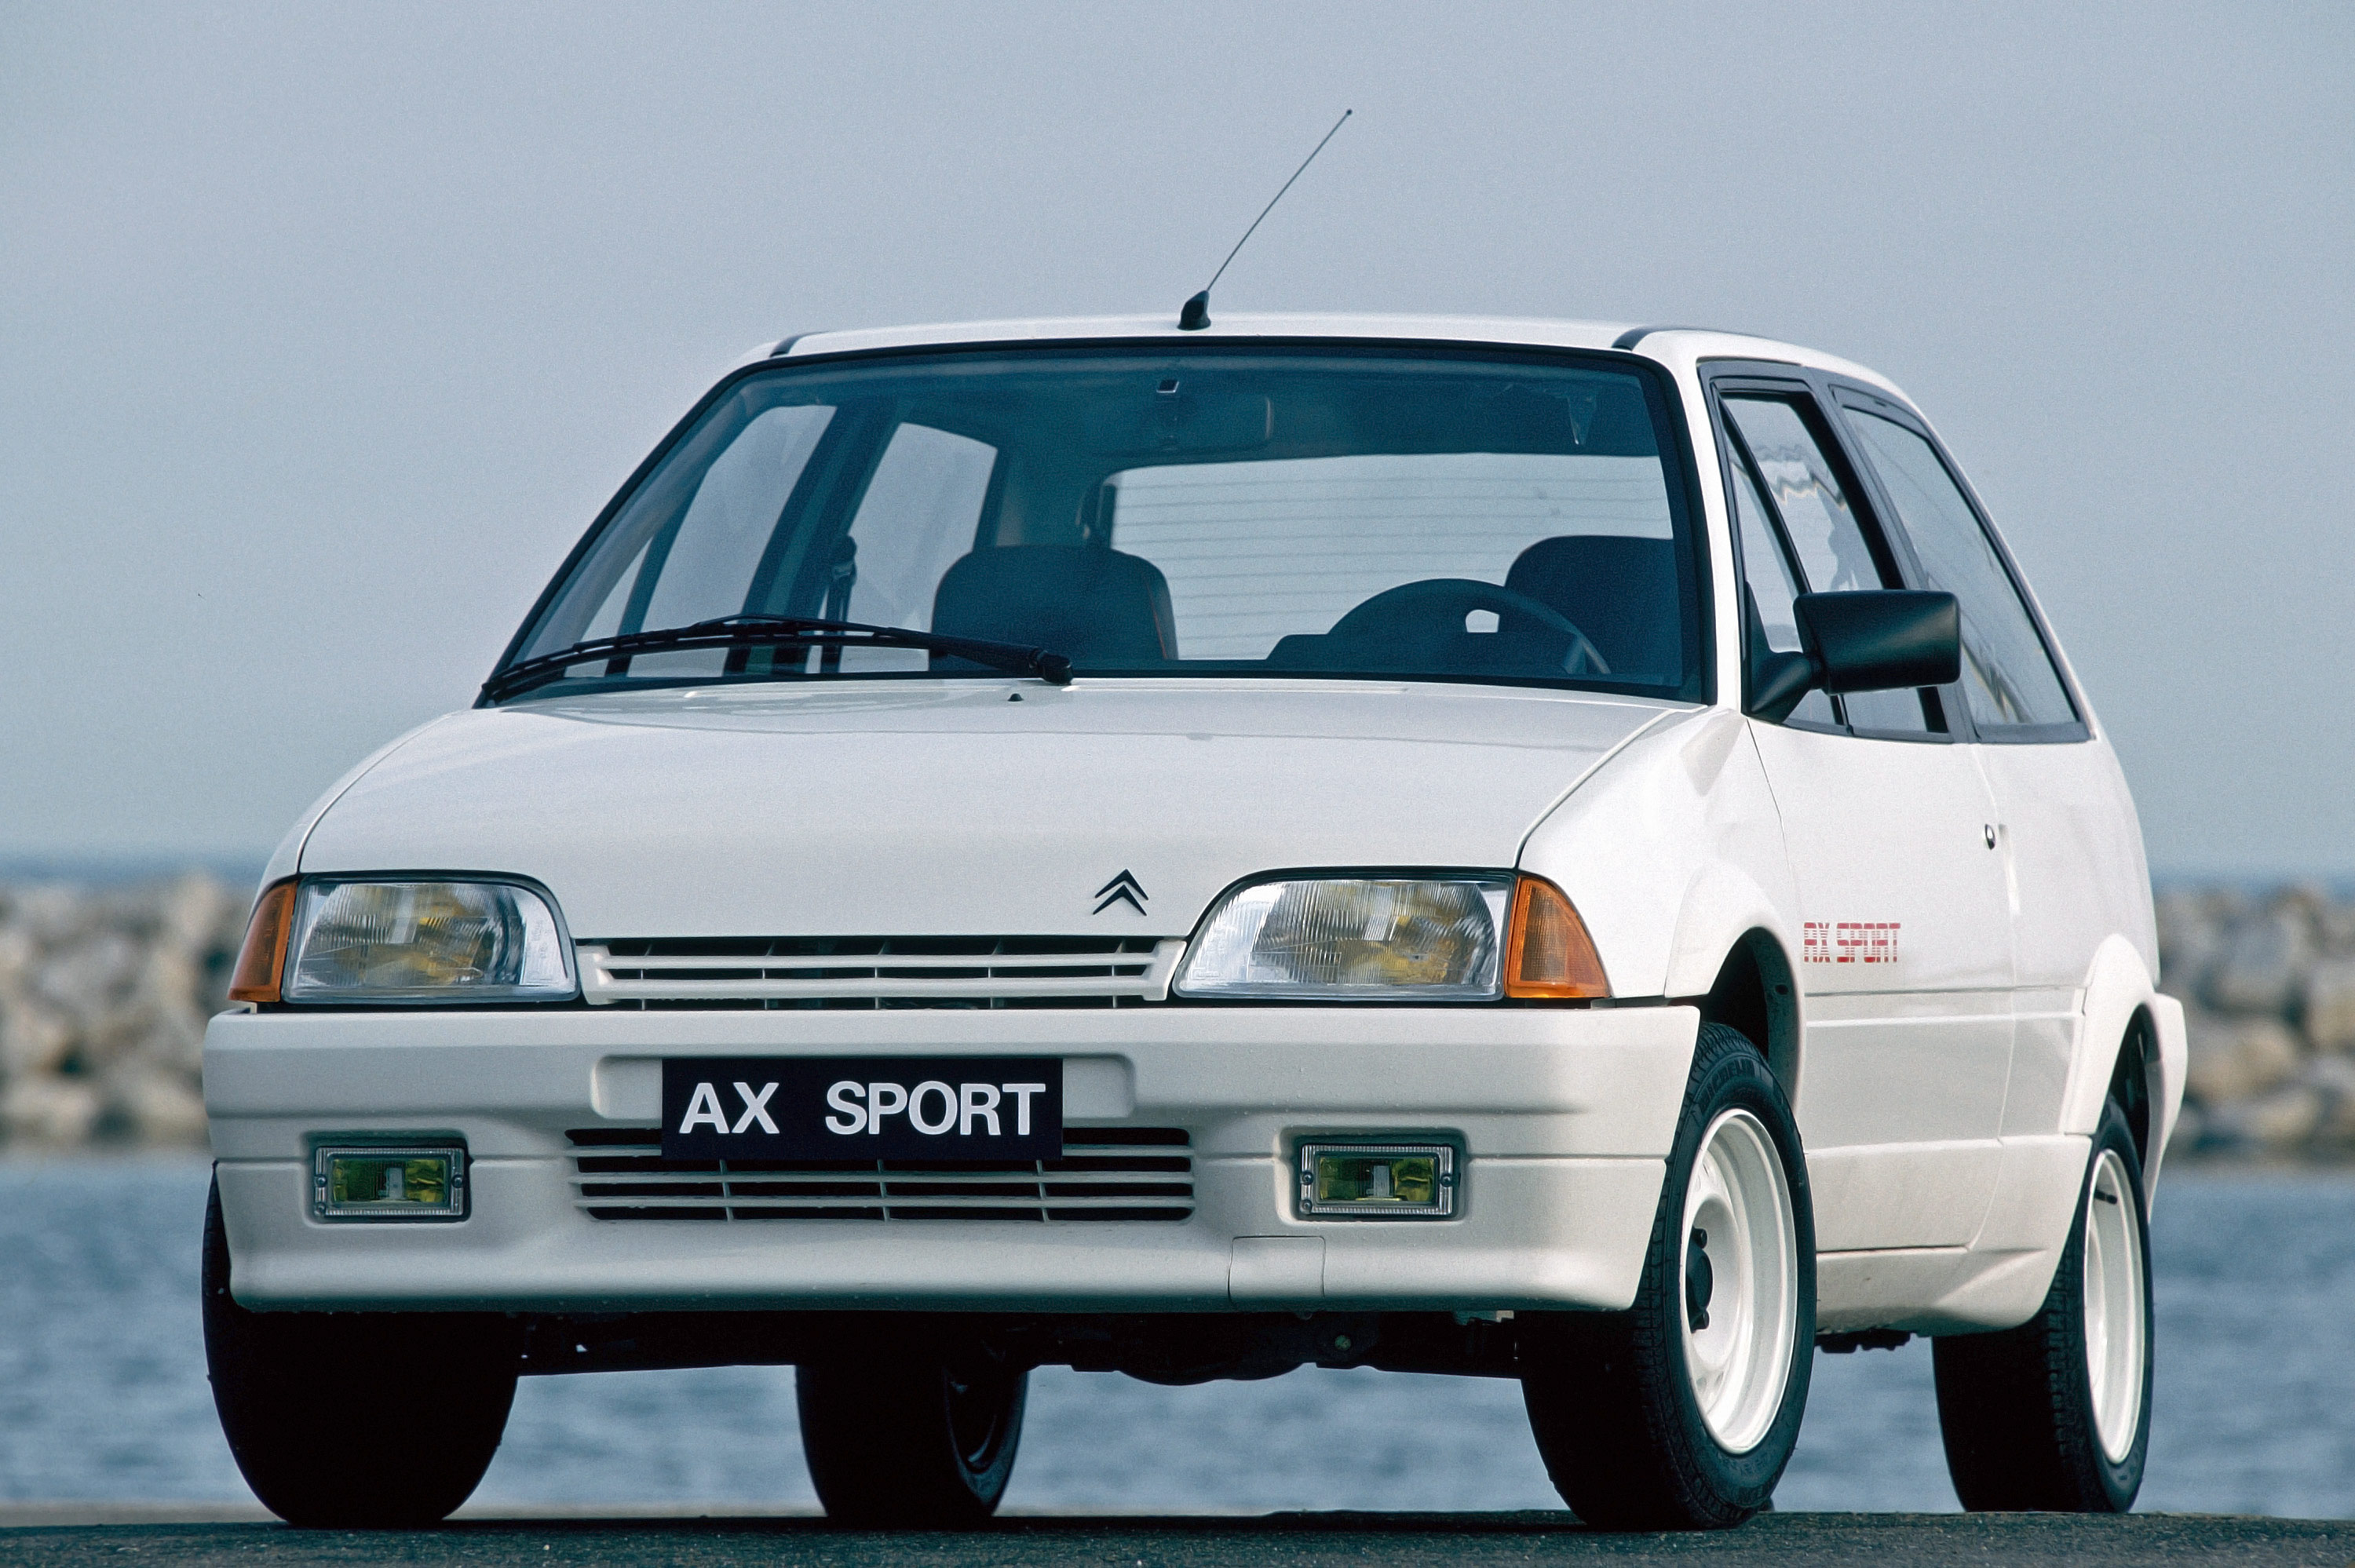 Citroën AX, o substituto do Visa que se tornou uma lenda